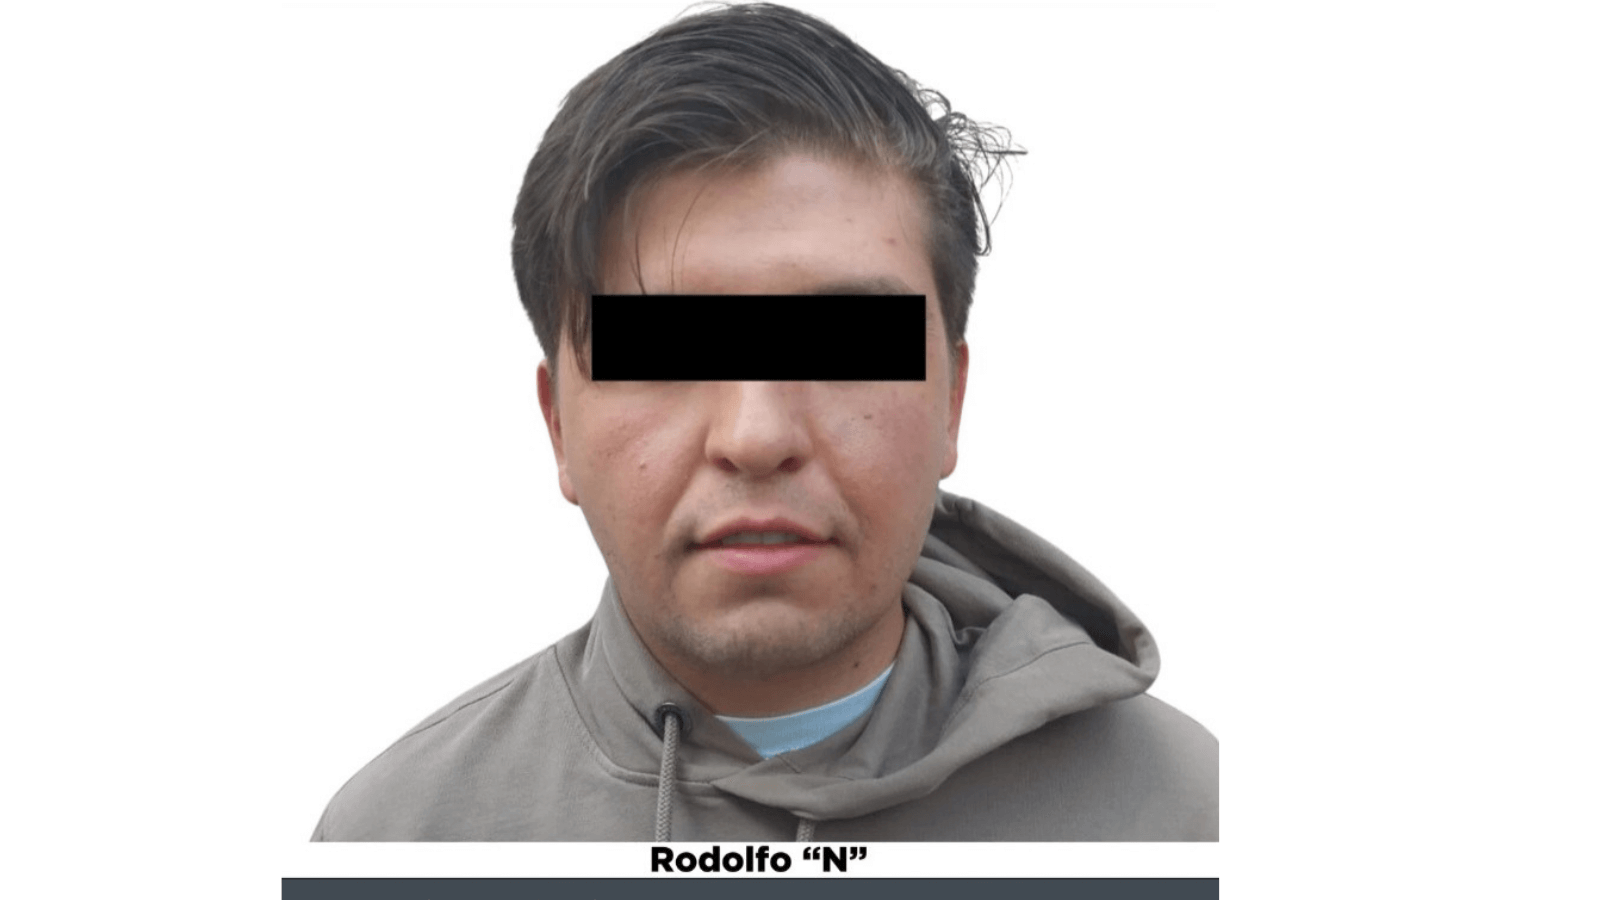 ¿Quién es Rodolfo "Fofo" Márquez y por qué irá a juicio por
cargos de intento de feminicidio en México?